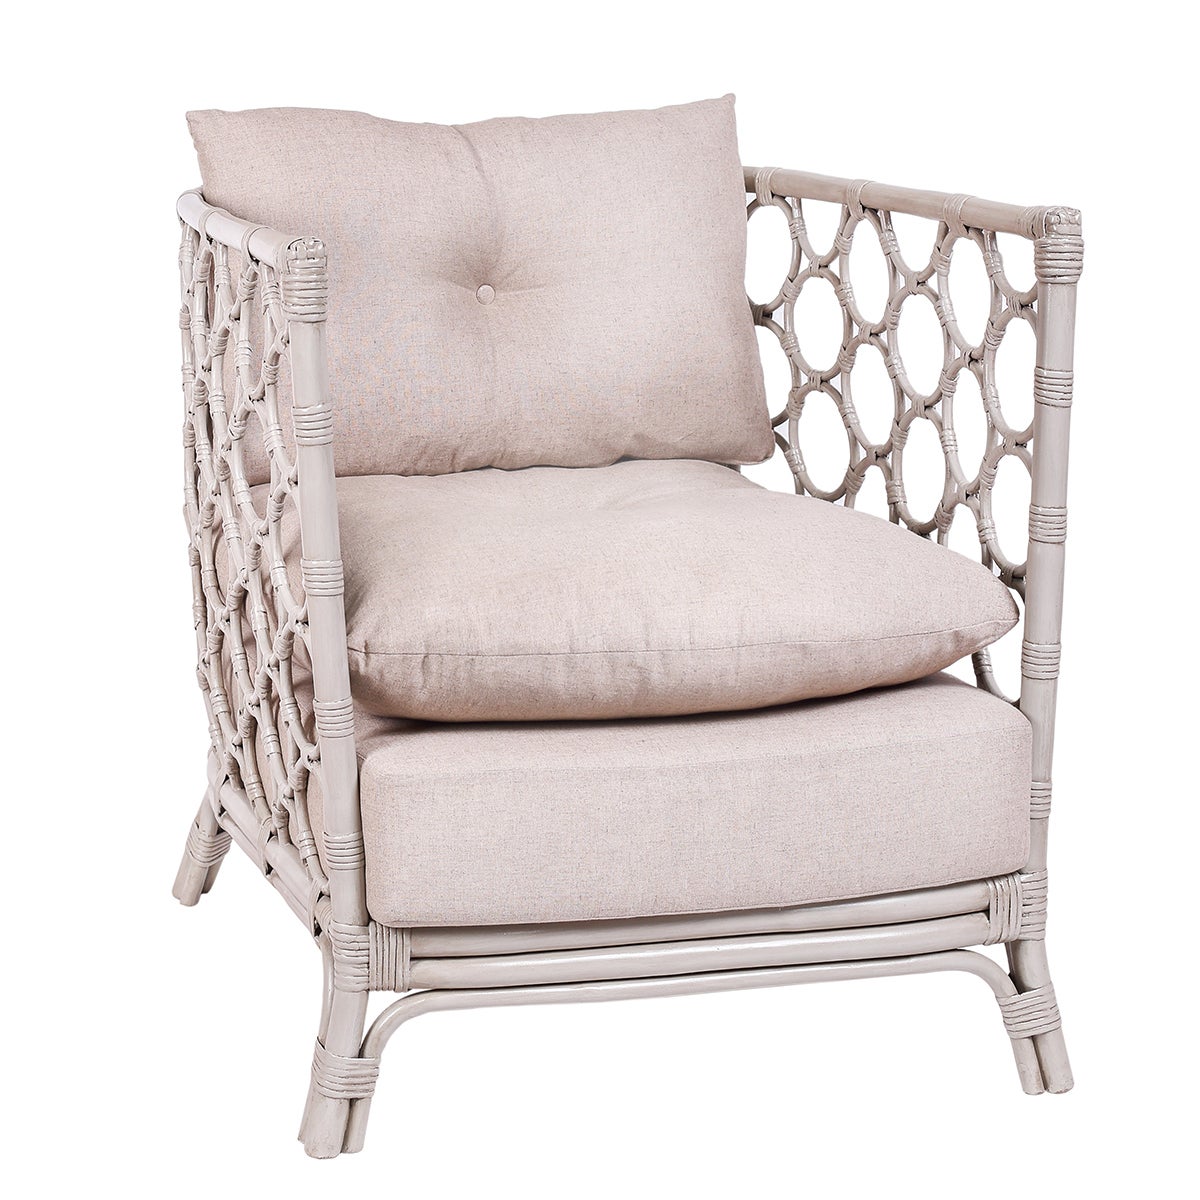 Molly Rattan Chair, Thick Cushion